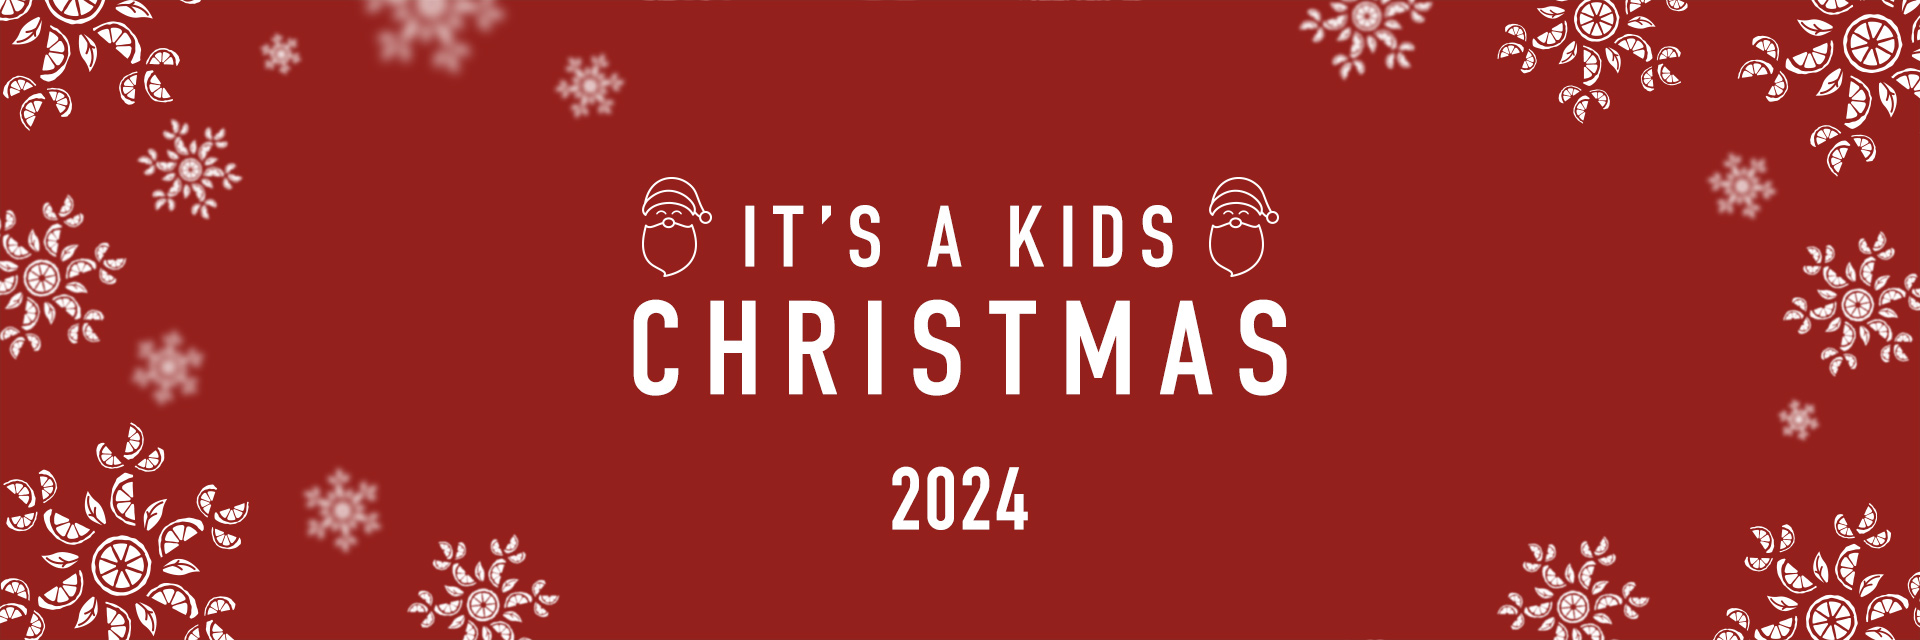 Kids Christmas Menu 2024 at WHEATSHEAF COLESHILL